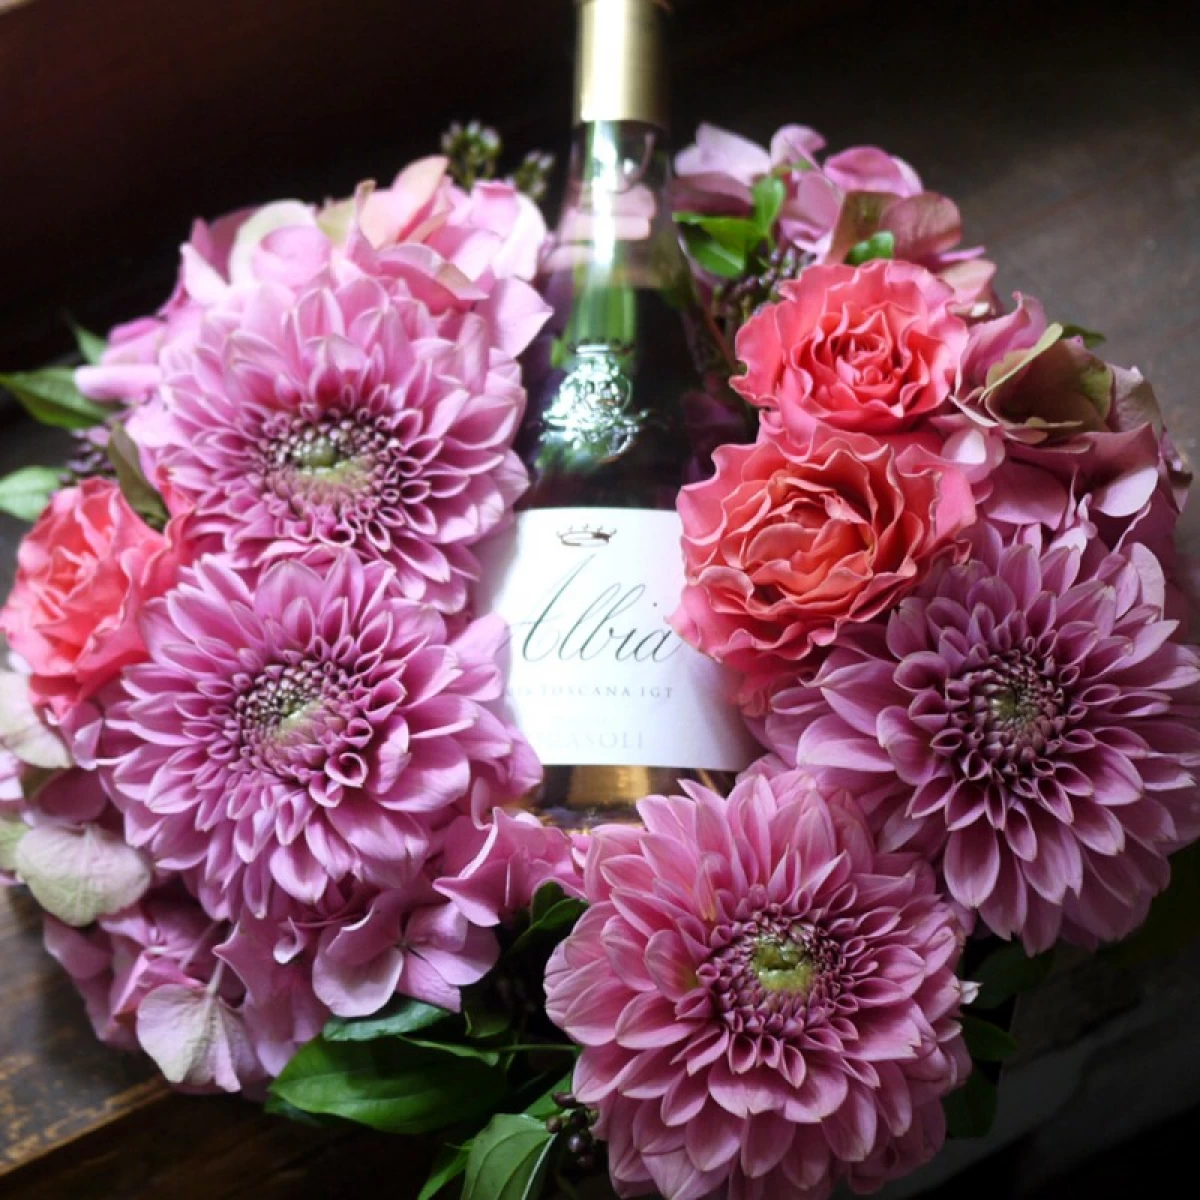 バースデー 結婚祝い[ワイン 生花 ギフト] 生花のフラワーリースと上品で繊細なイタリア産ロゼワイン